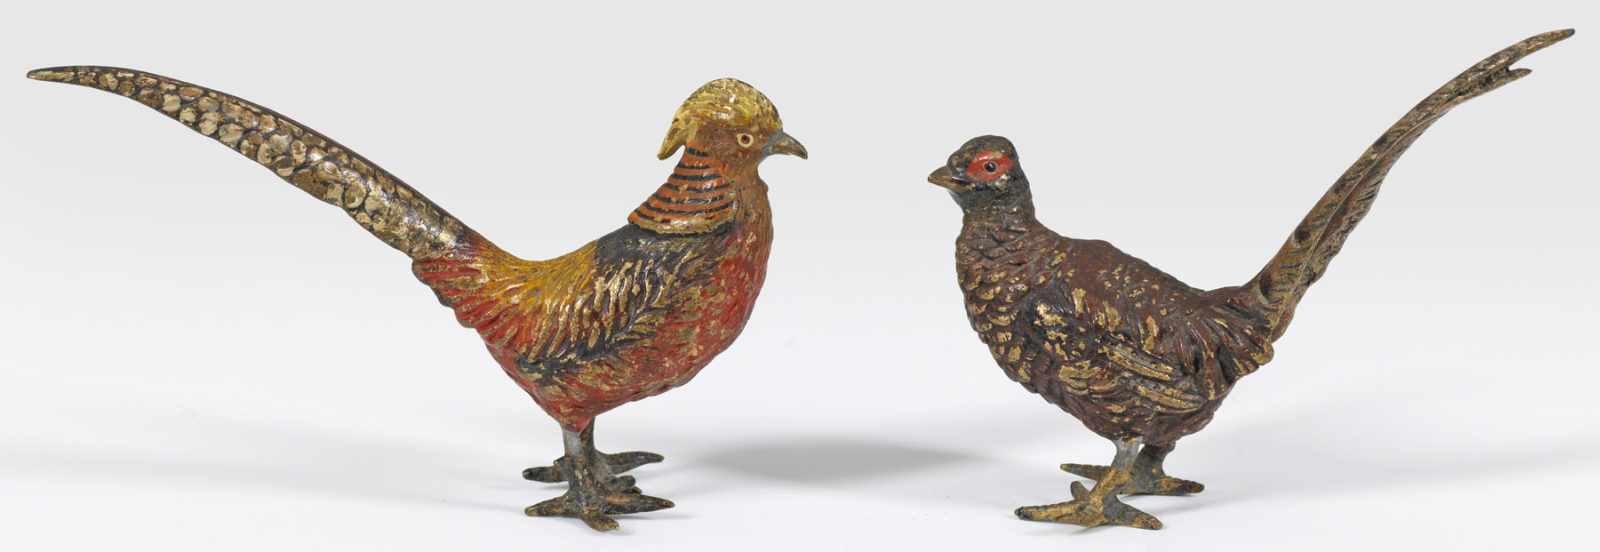 Zwei Fasanenhahn-FigurenWiener Bronze, farbig bemalt. Vollplastische, naturgetreue Darstellungen - Image 2 of 2